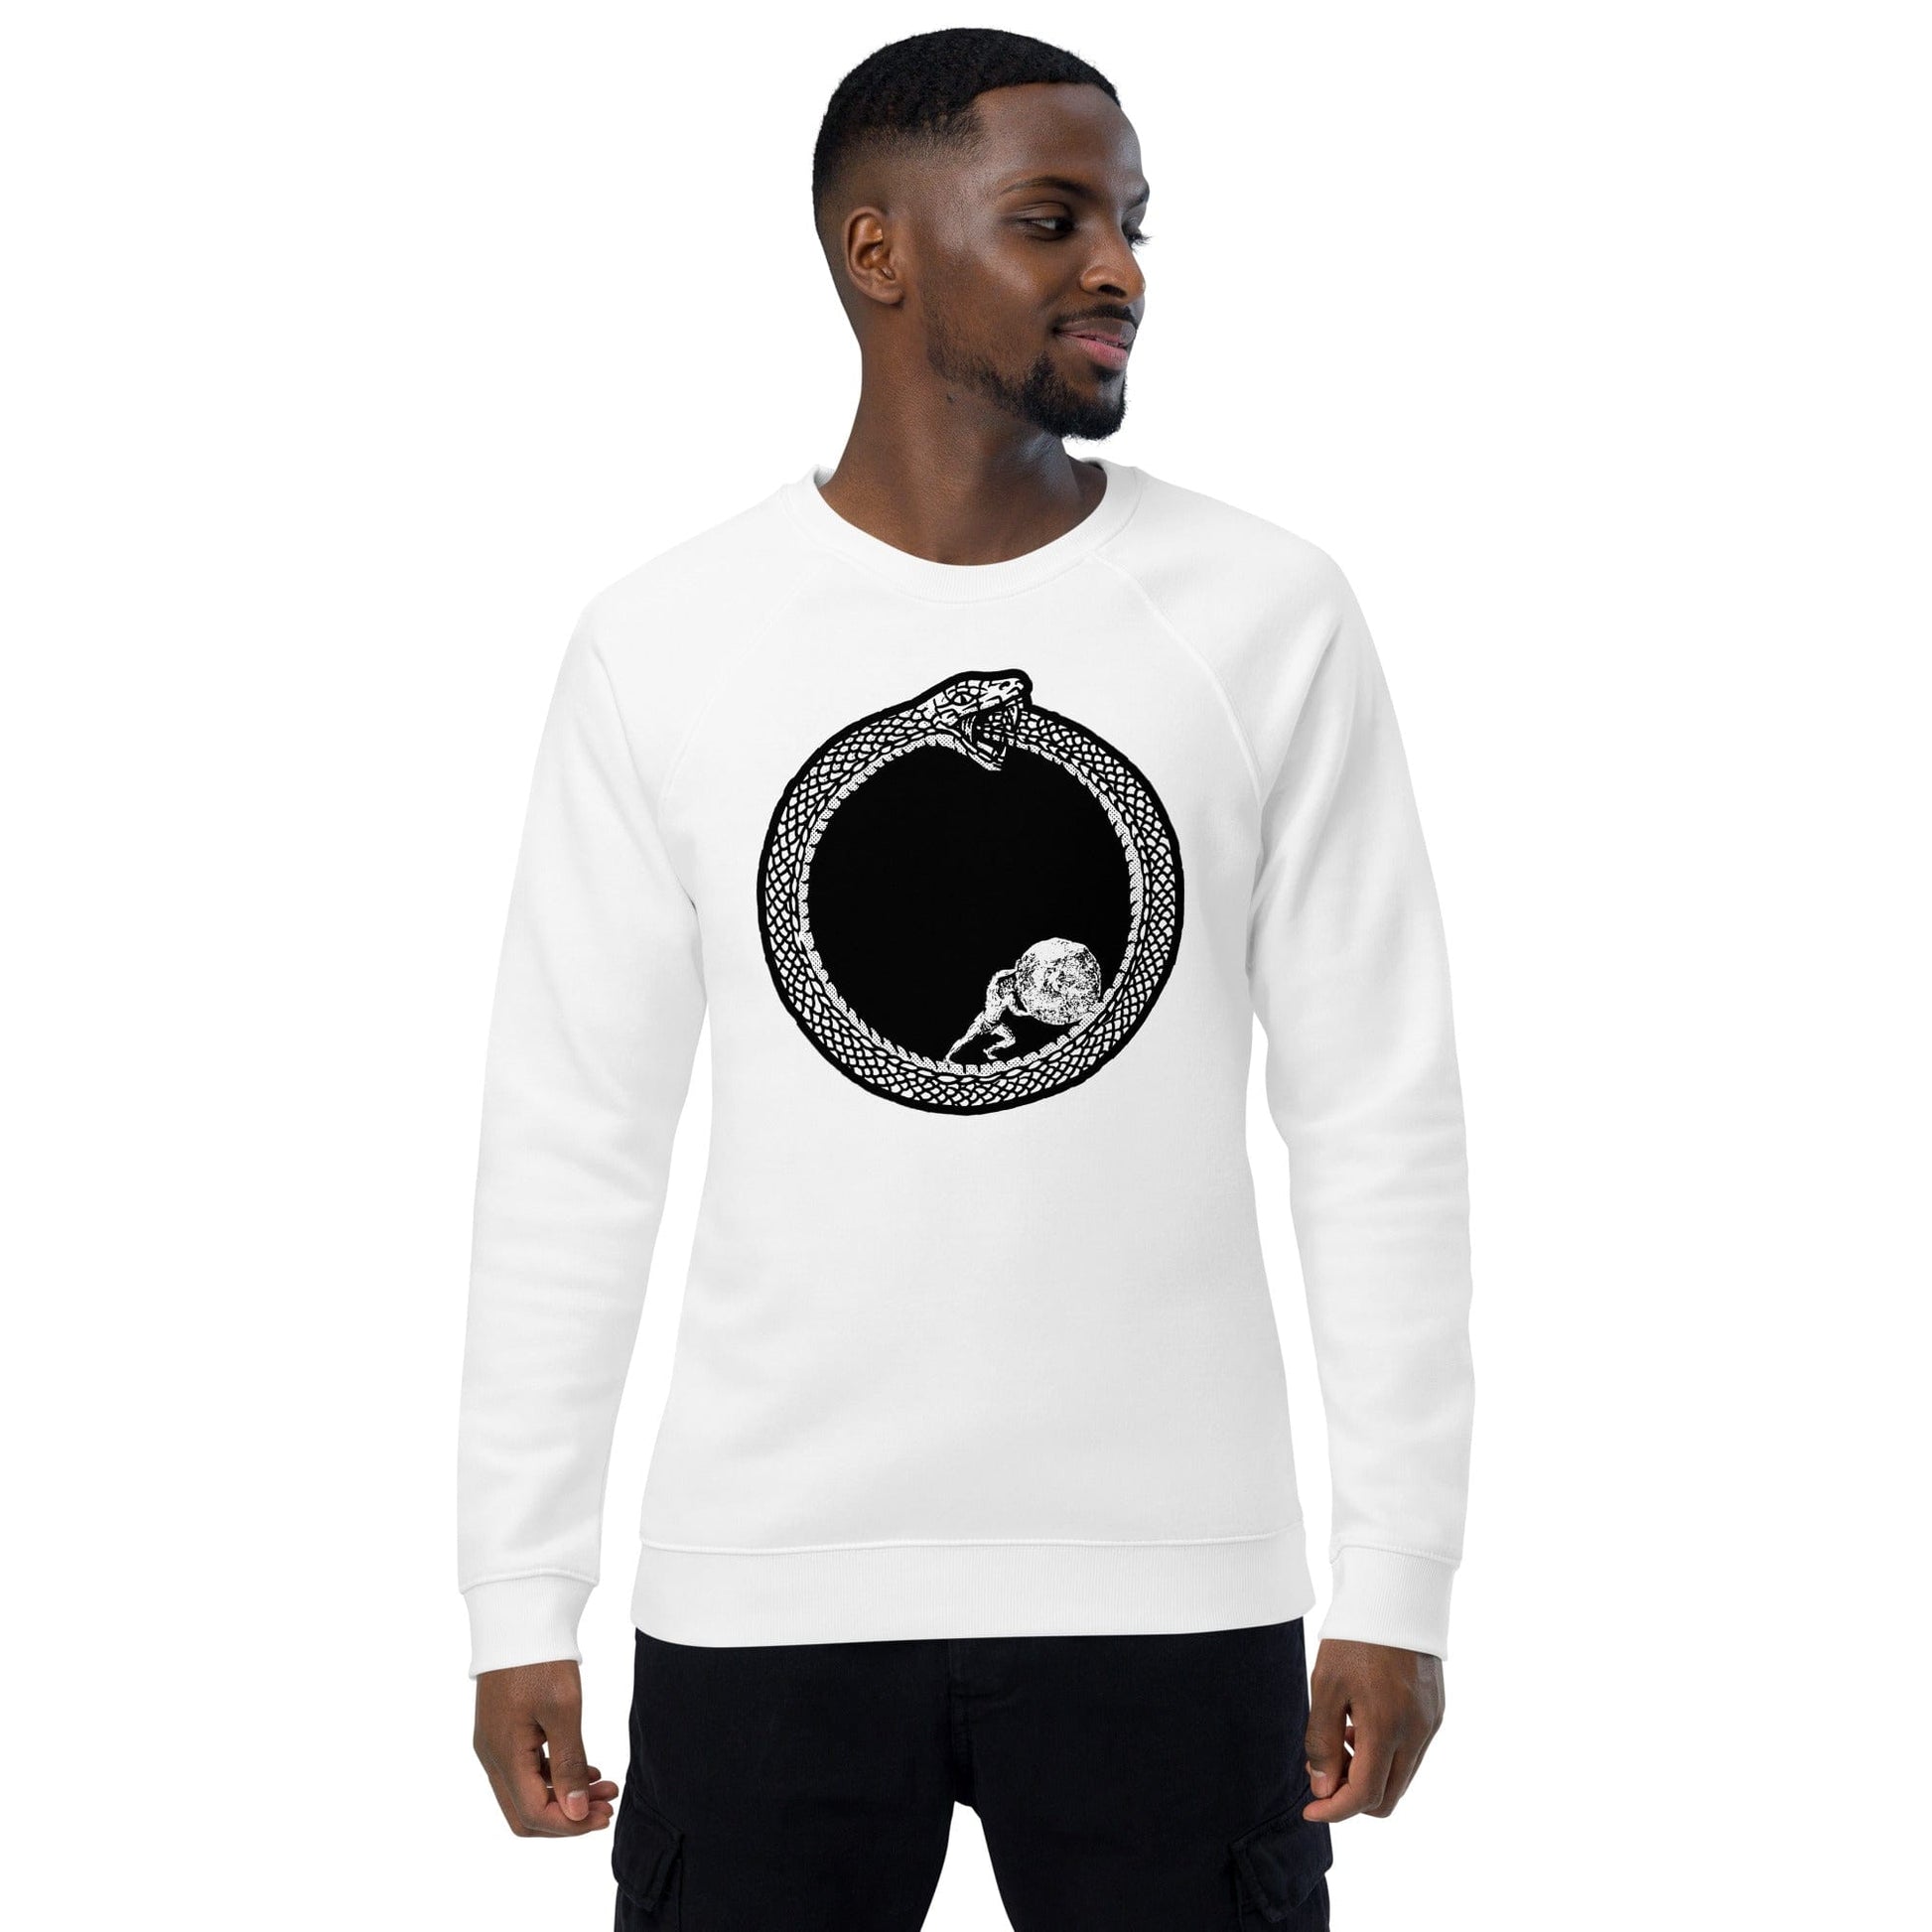 Sisyphus in Ouroboros - Eco Sweatshirt